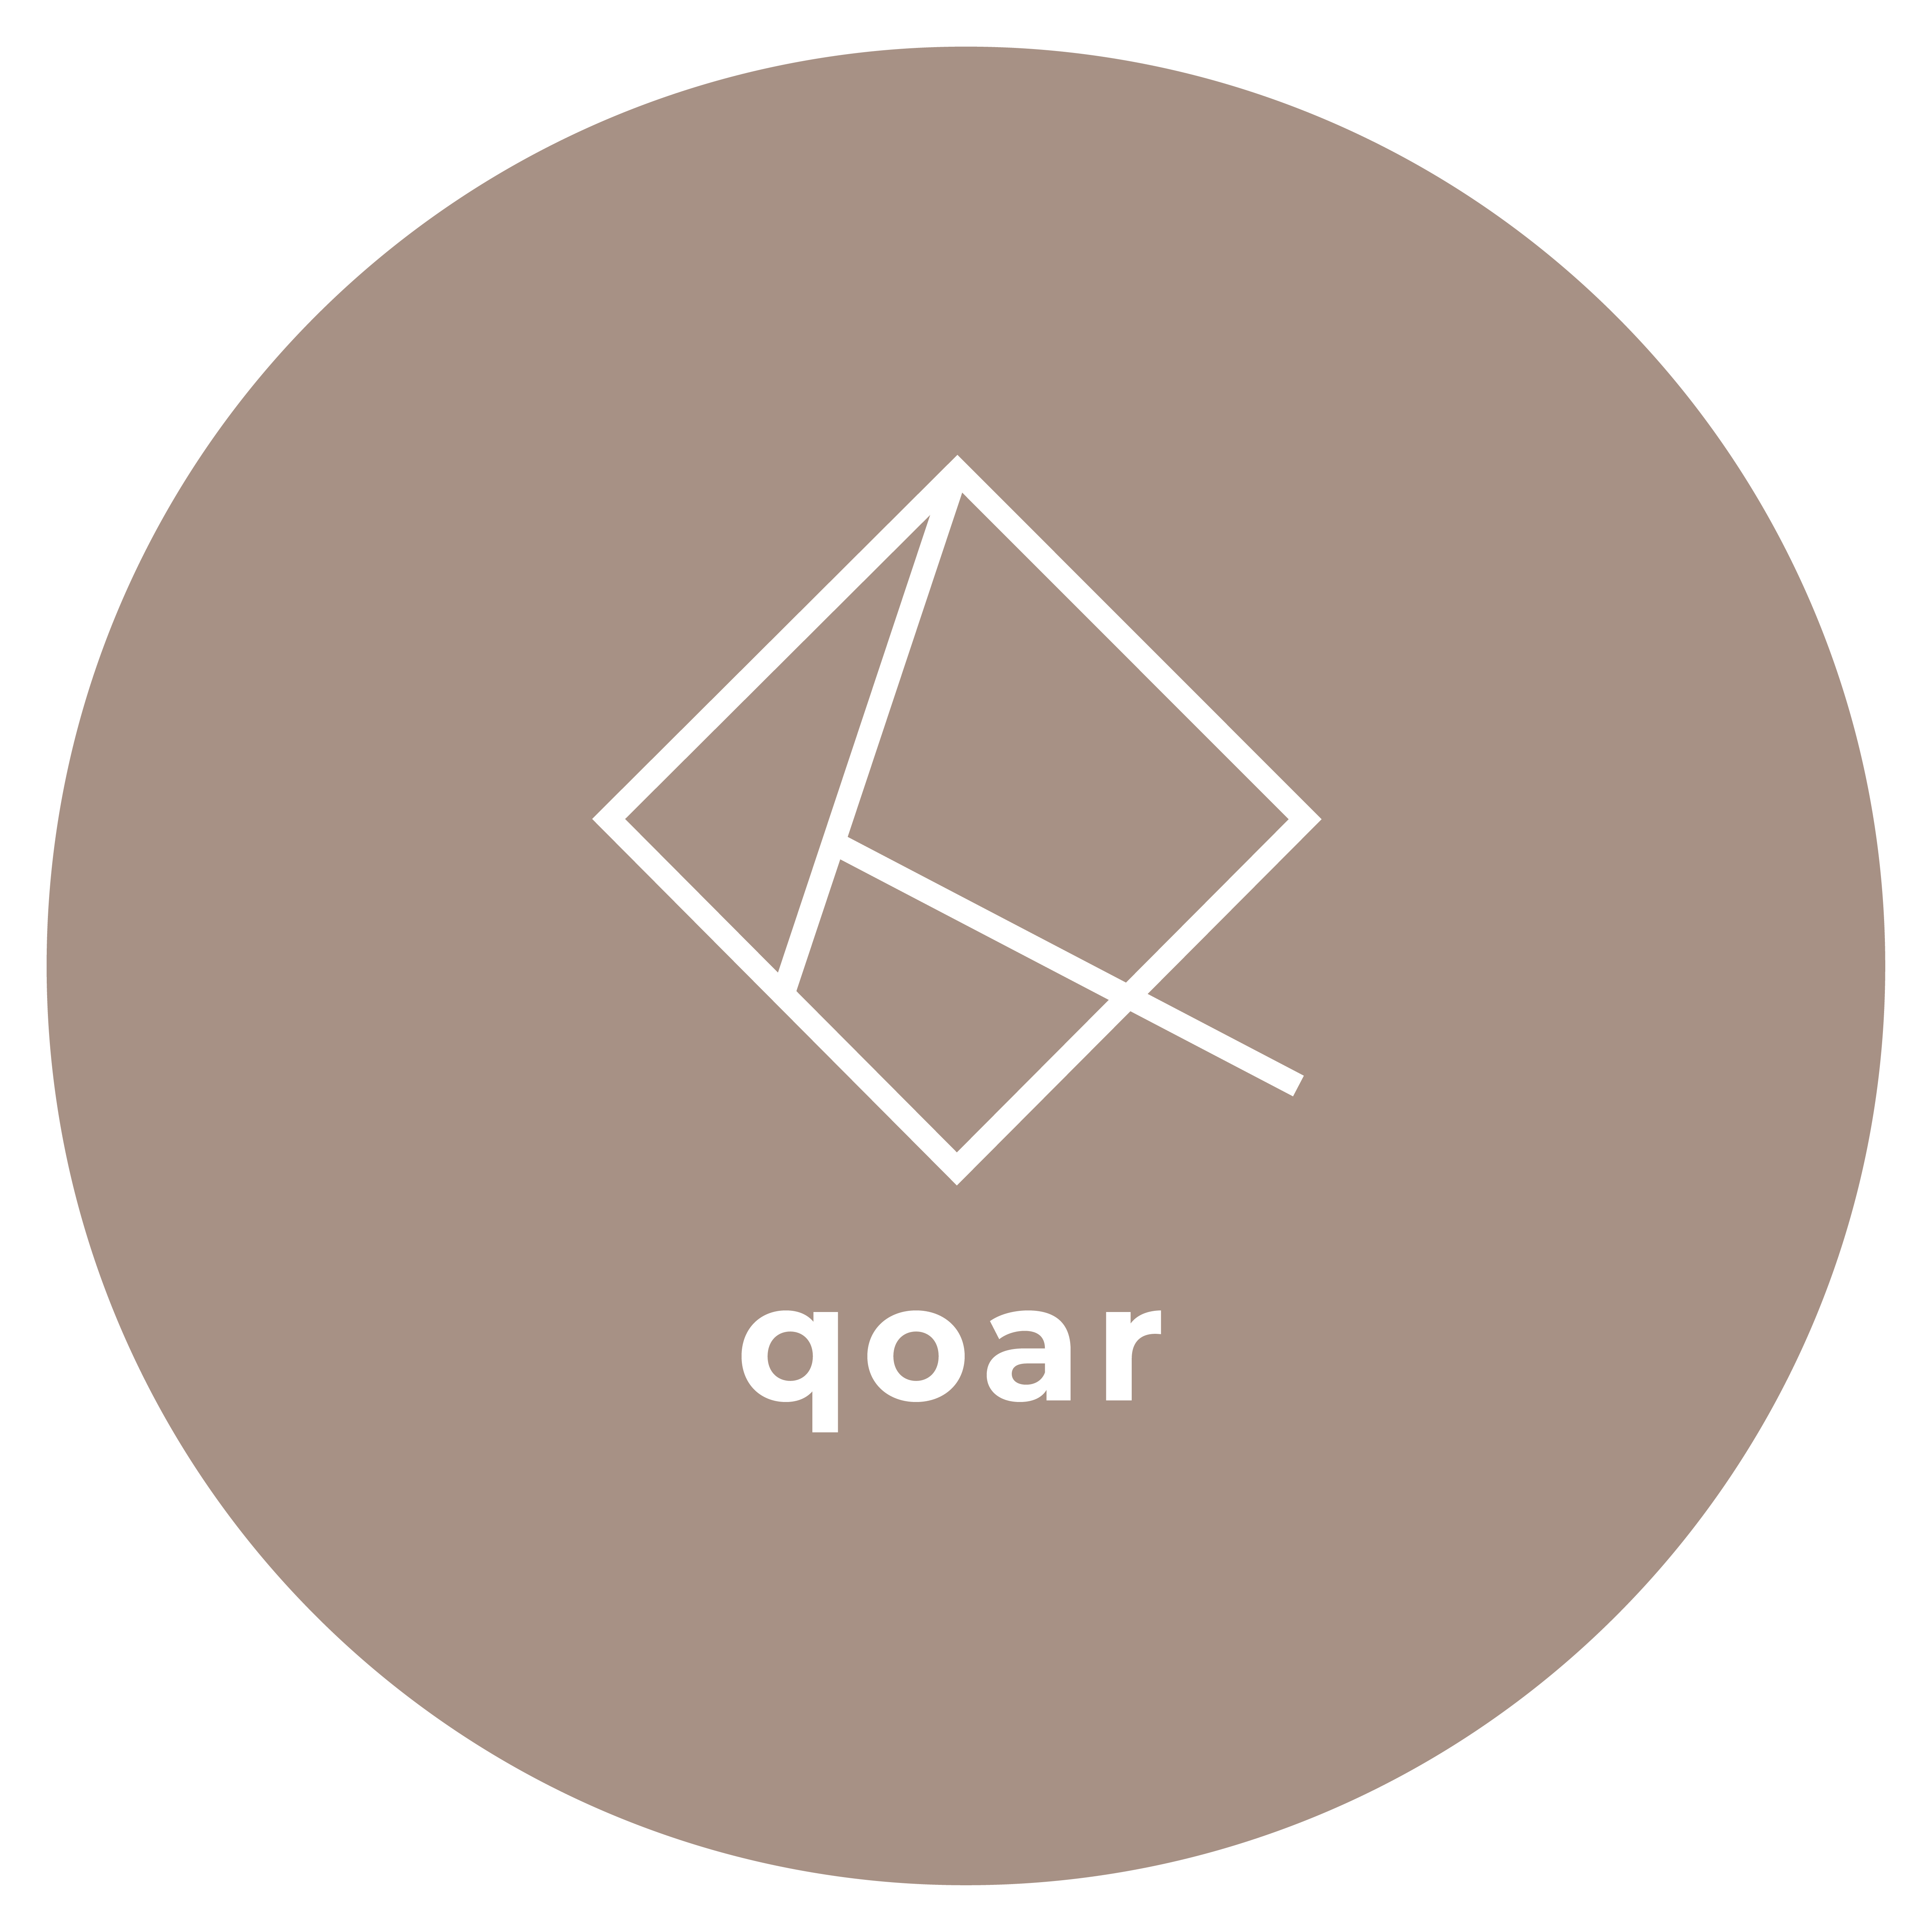 Qoar Creative Agency